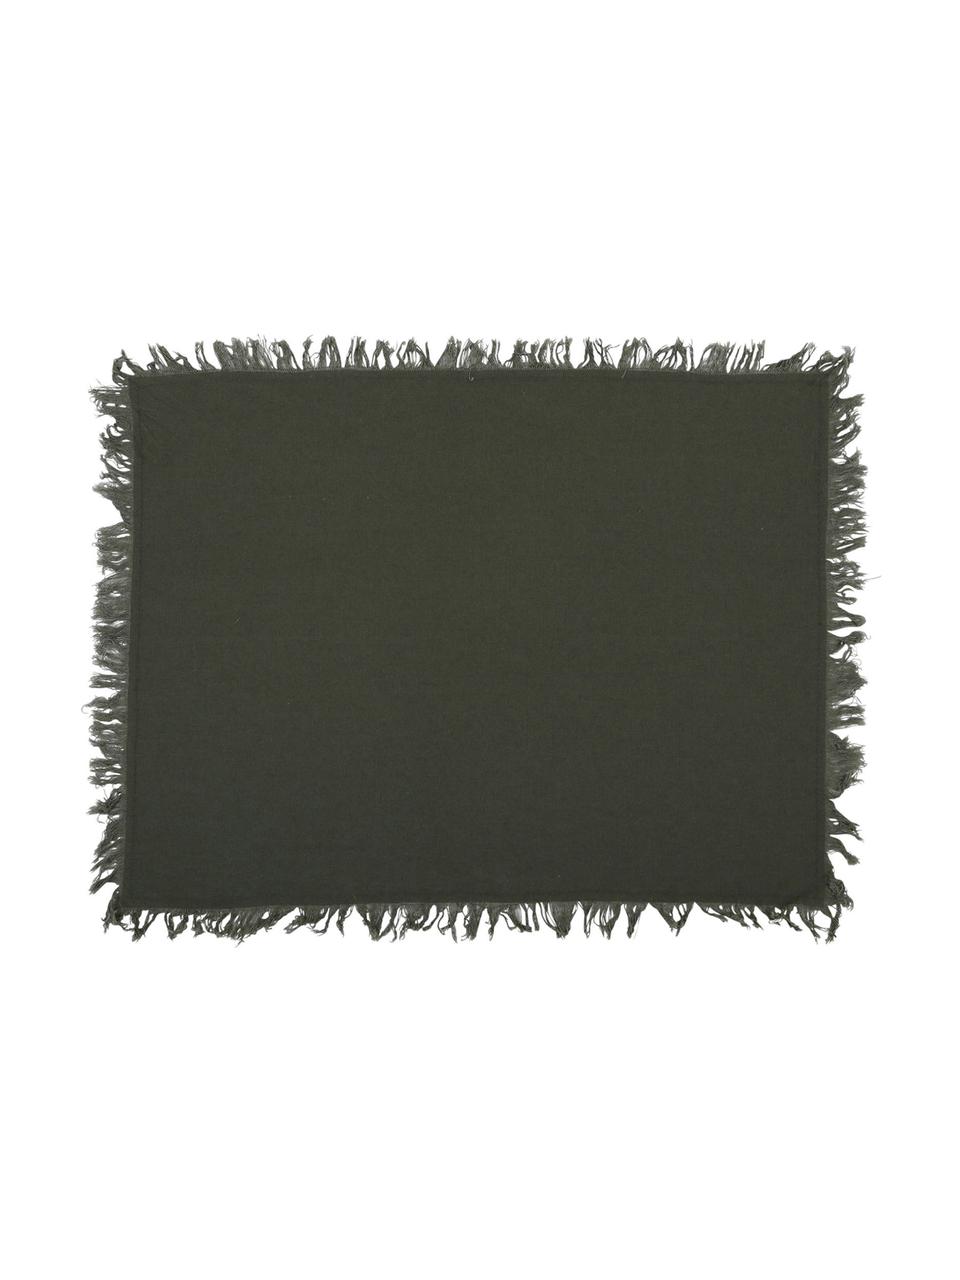 Baumwoll-Tischsets Nalia in Grau mit Fransen, 2 Stück, Baumwolle, Grau, B 50 x L 40 cm